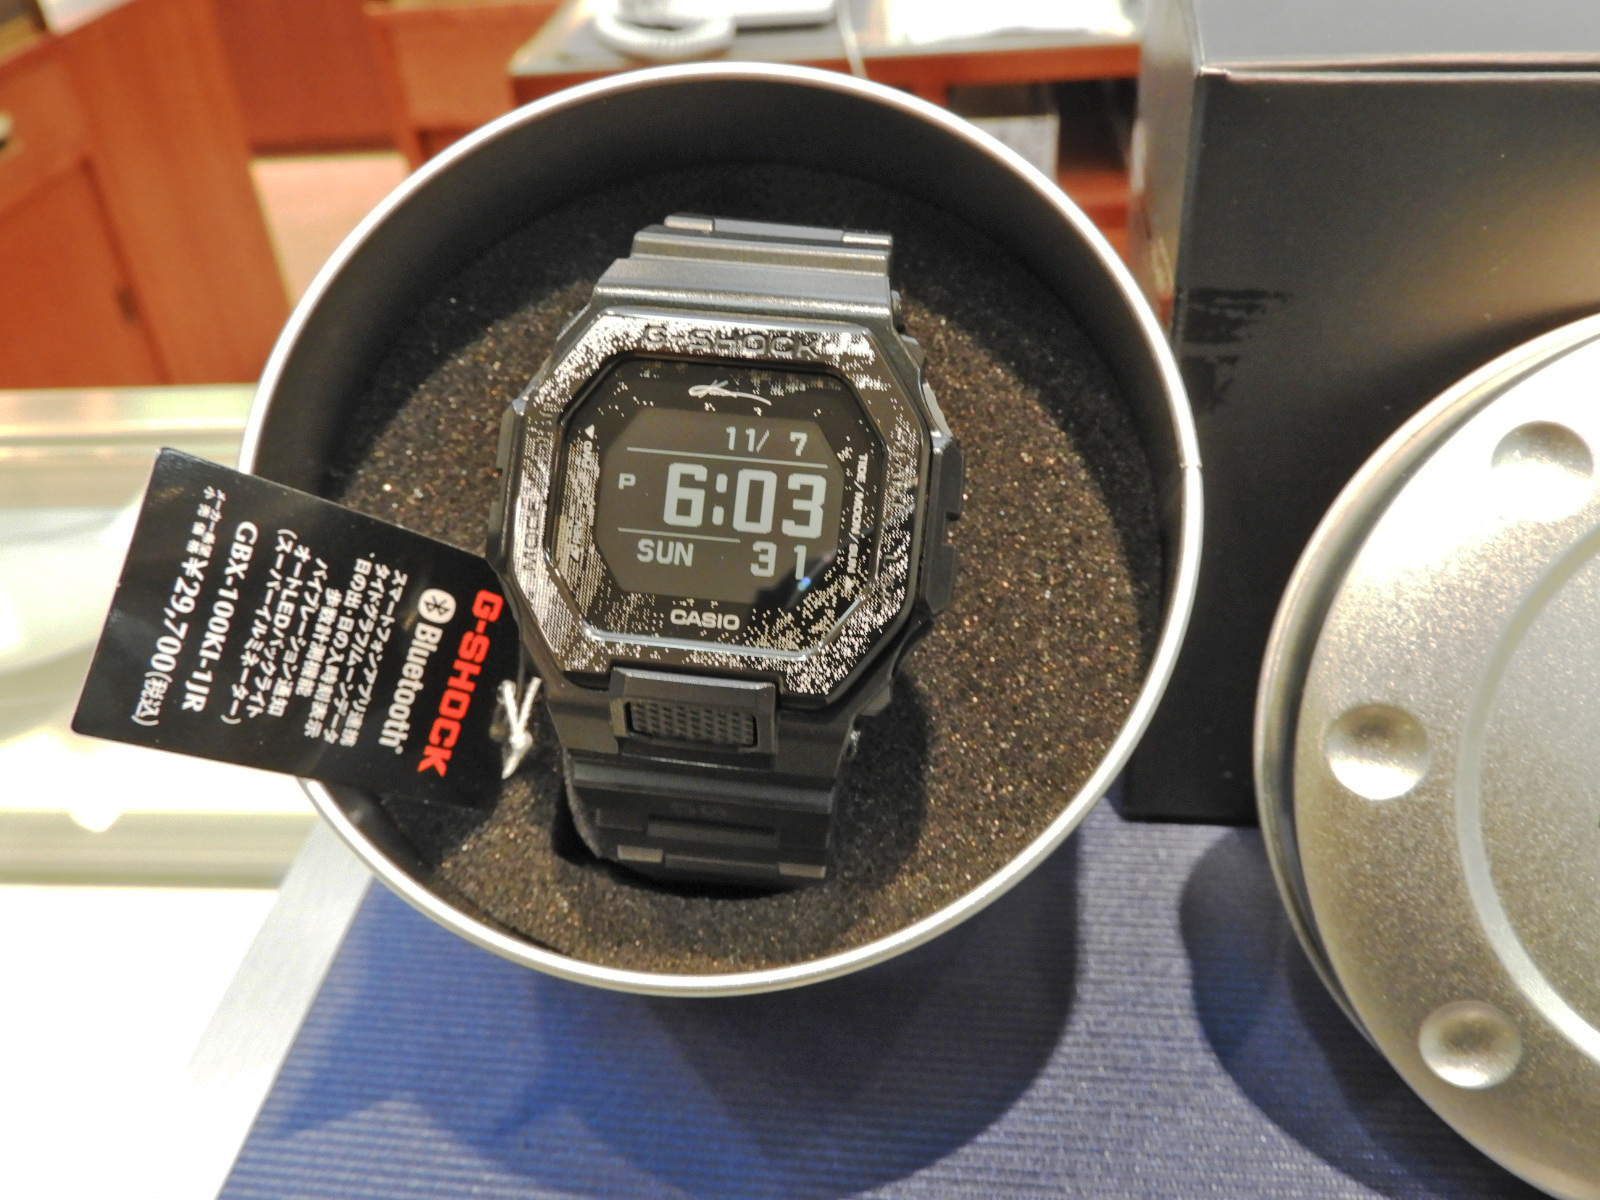 GBX-100KI-1JR 五十嵐カノア コラボモデル - 腕時計(デジタル)